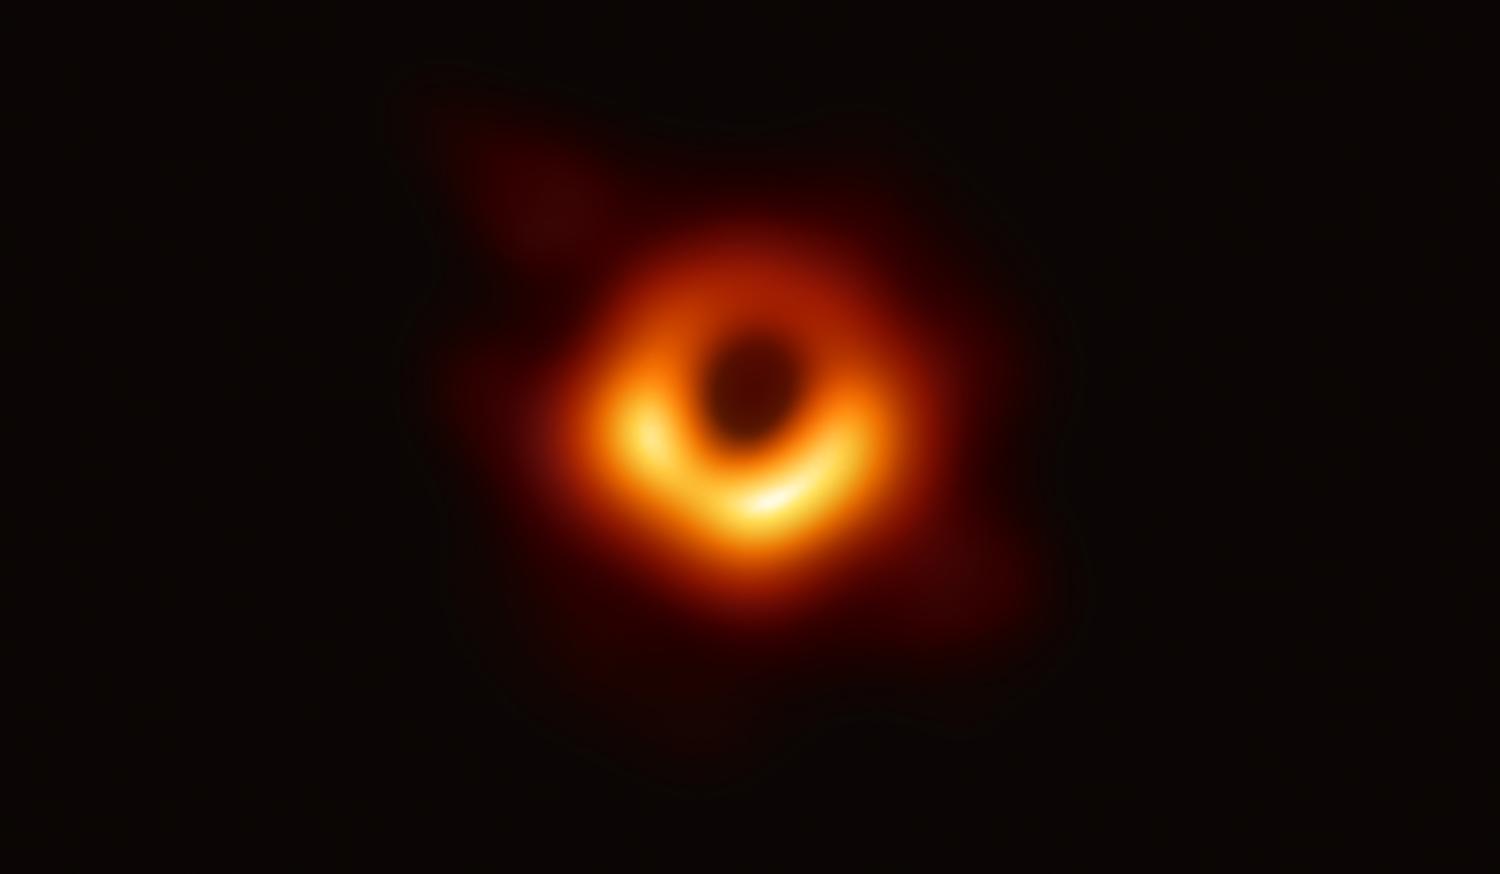 10. apríl 2019: Na úplne prvej snímke čiernej diery v histórii vidíme supermasívnu čiernu dieru M87* v centre galaxie Messier 87. Obrázok nie je skutočný, ide o „preklad“ z rádiovej časti spektra.